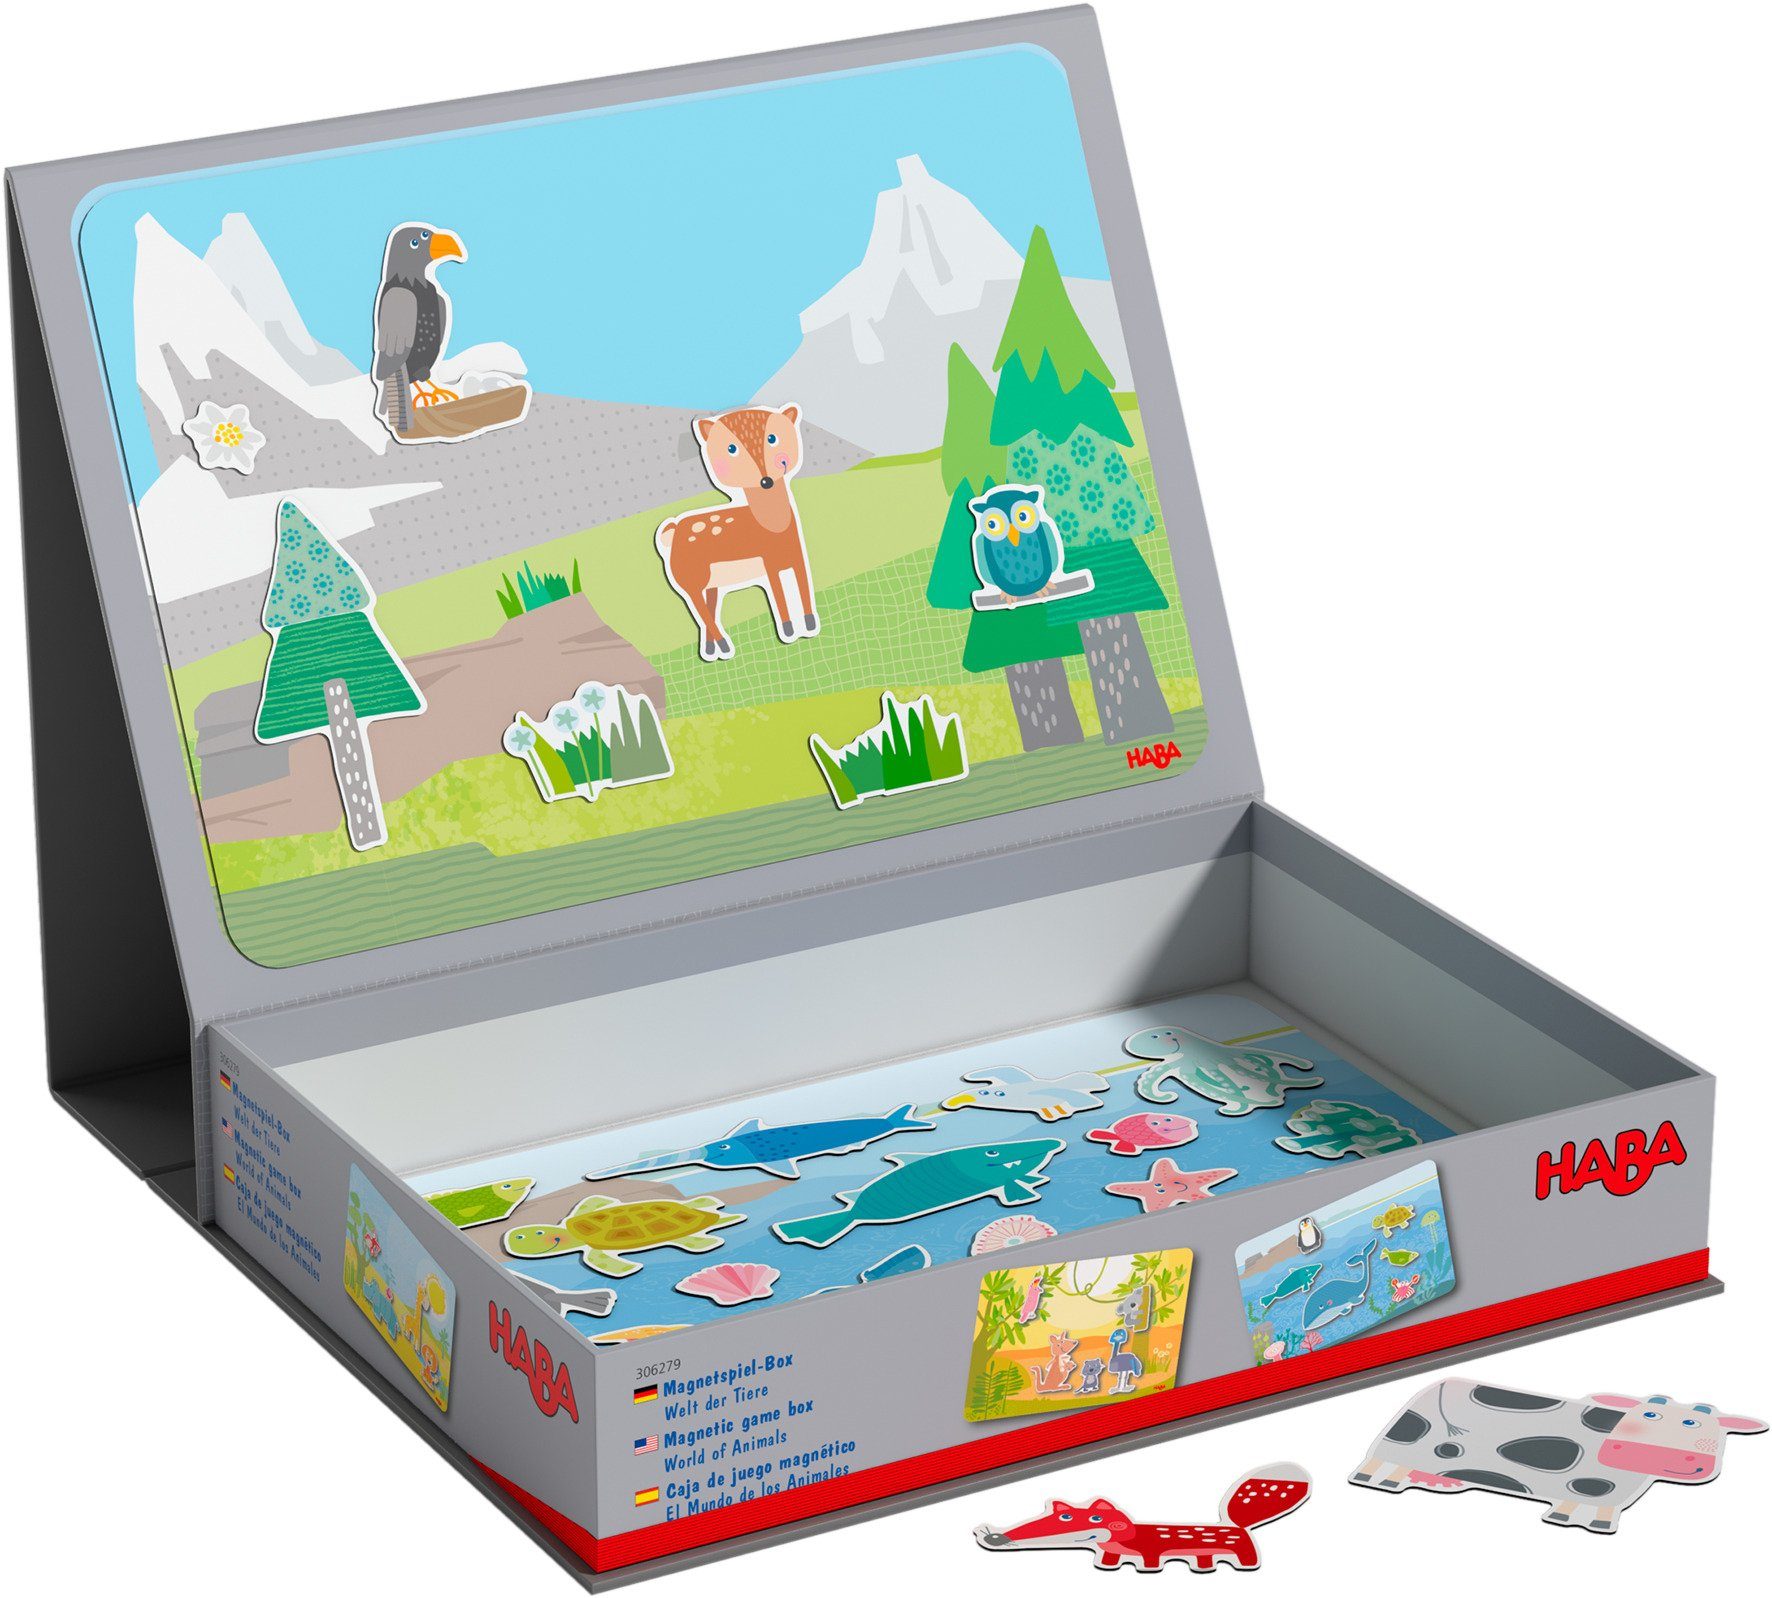 der Zuordnungsspiel Magnetspiel-Box, Spiel, Haba Tiere Welt